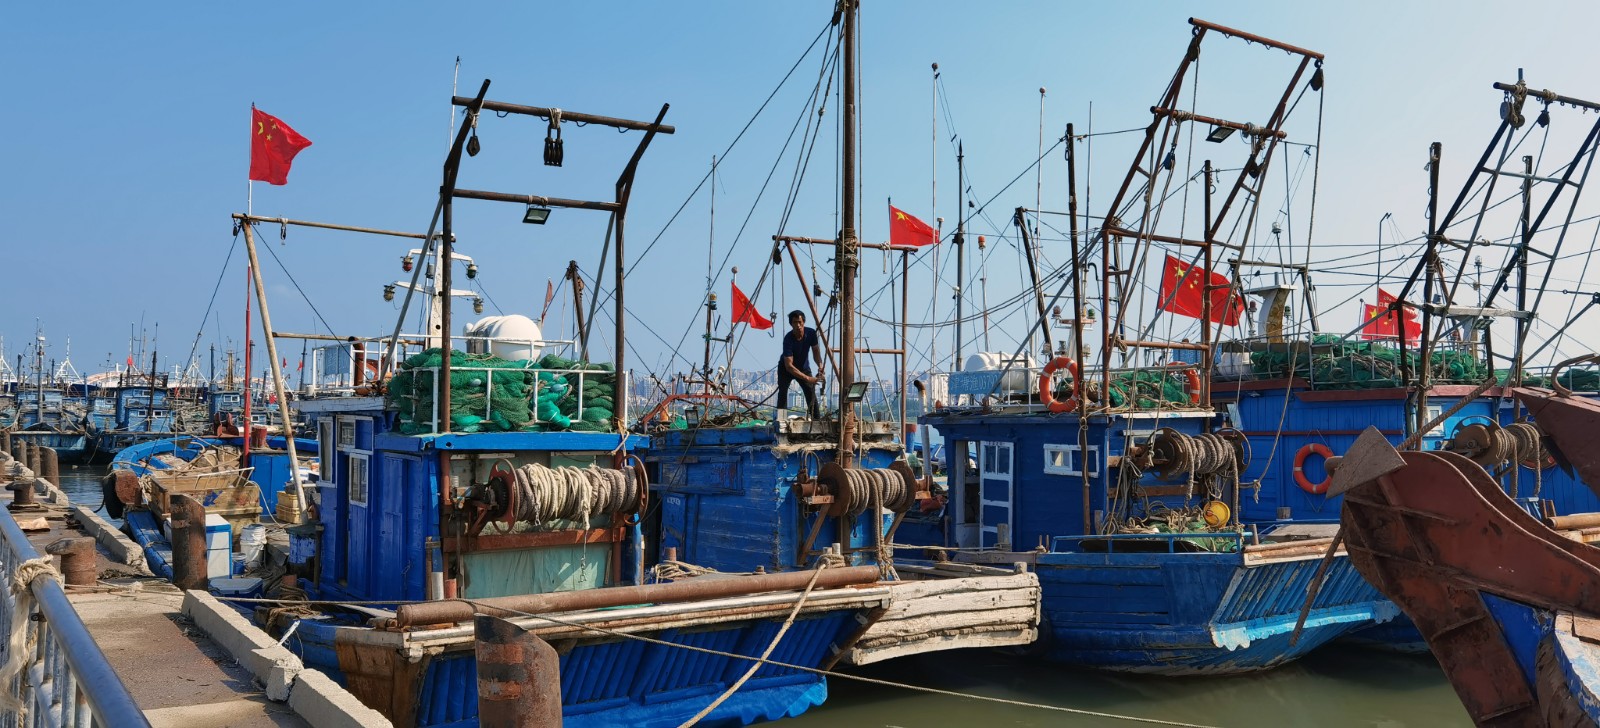 12点,捕捞渔船陆续从新区各渔港码头驶离,撒网开捕